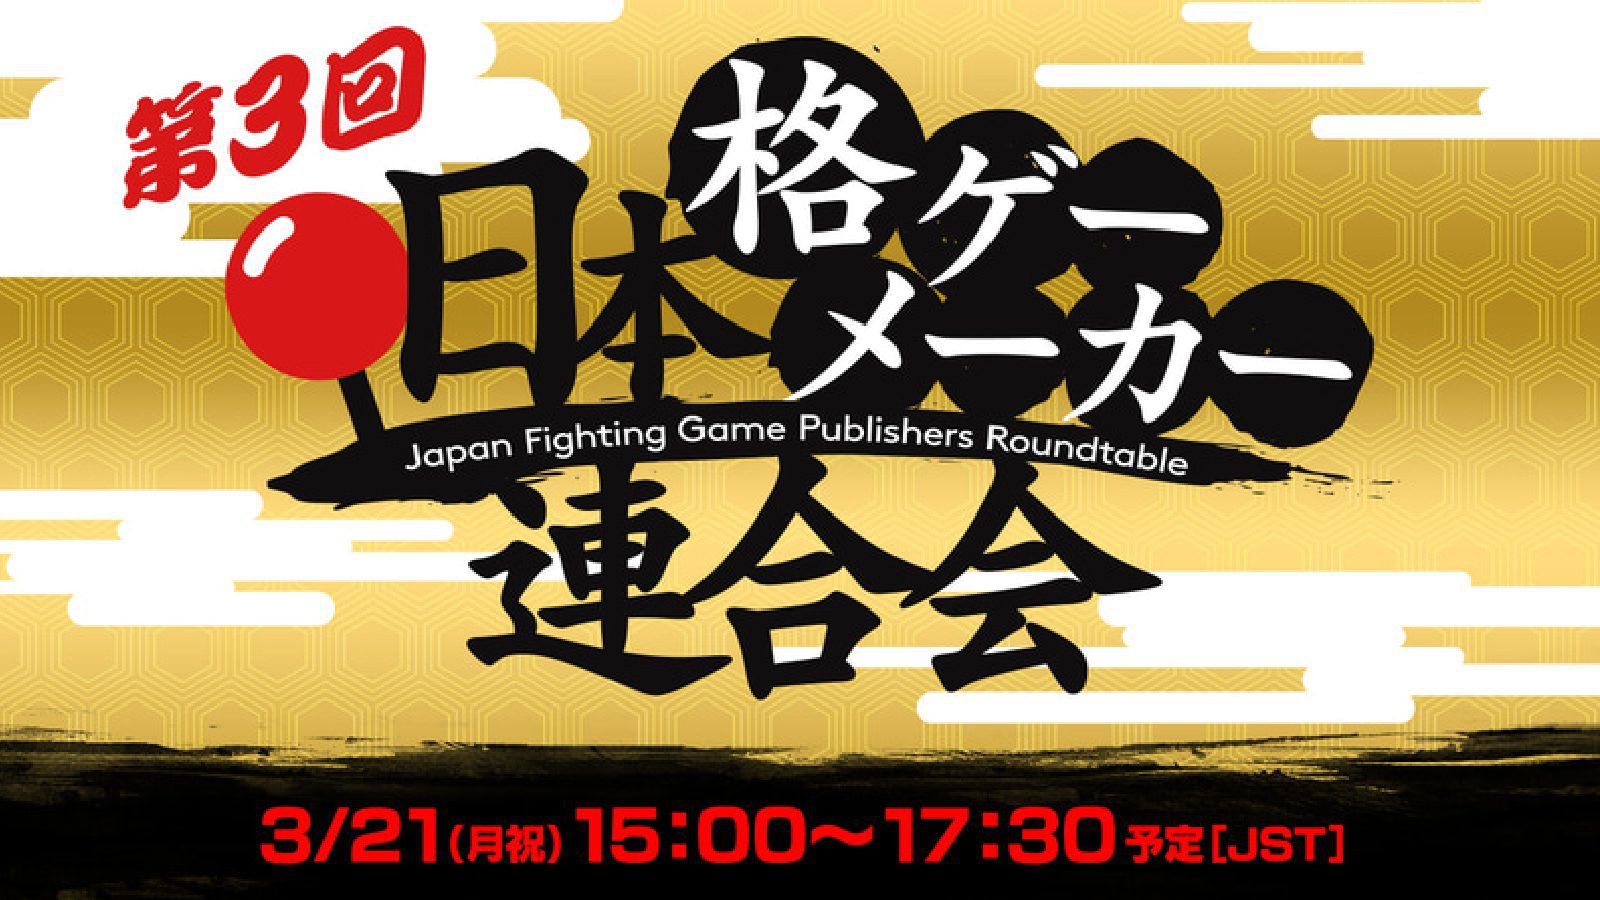 Третья ассоциация производителей игр японского уровня состоится 21 марта с участием 6 компаний